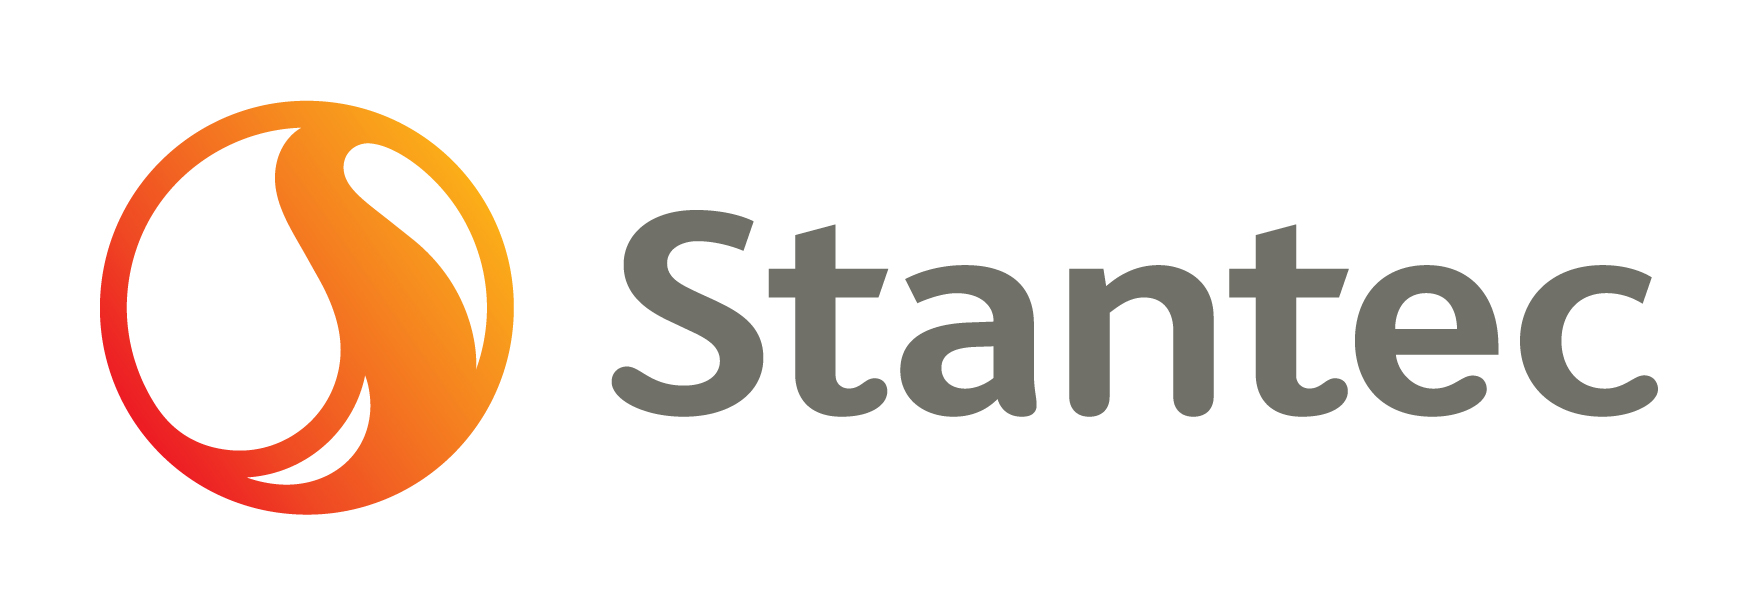 Stantec Consulting Ltd.